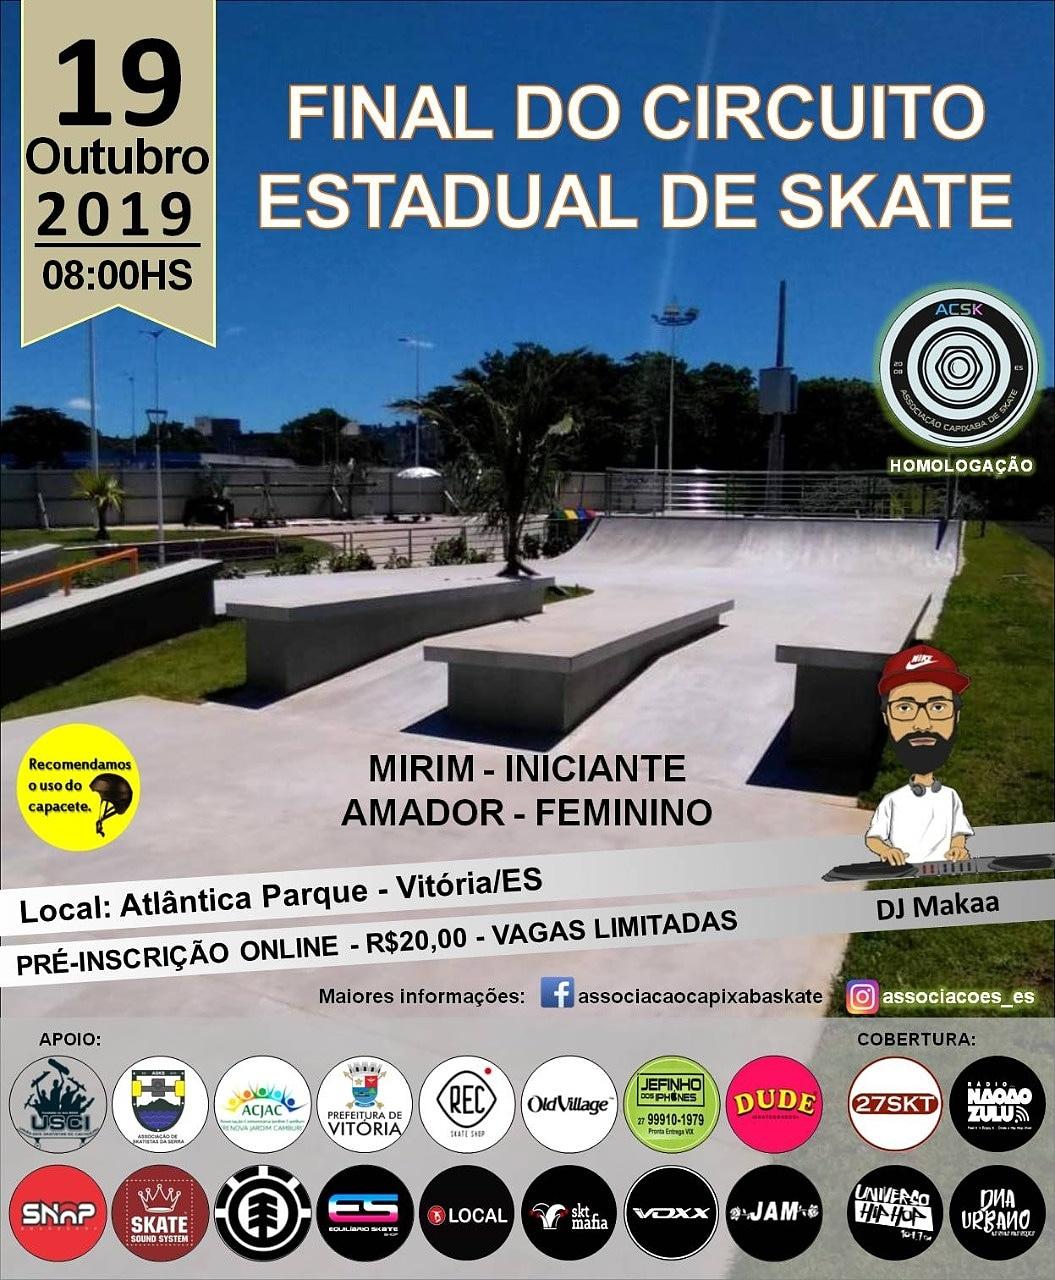 Última etapa do Circuito Capixaba de Skate acontece sábado (19), em Vitória (ES)